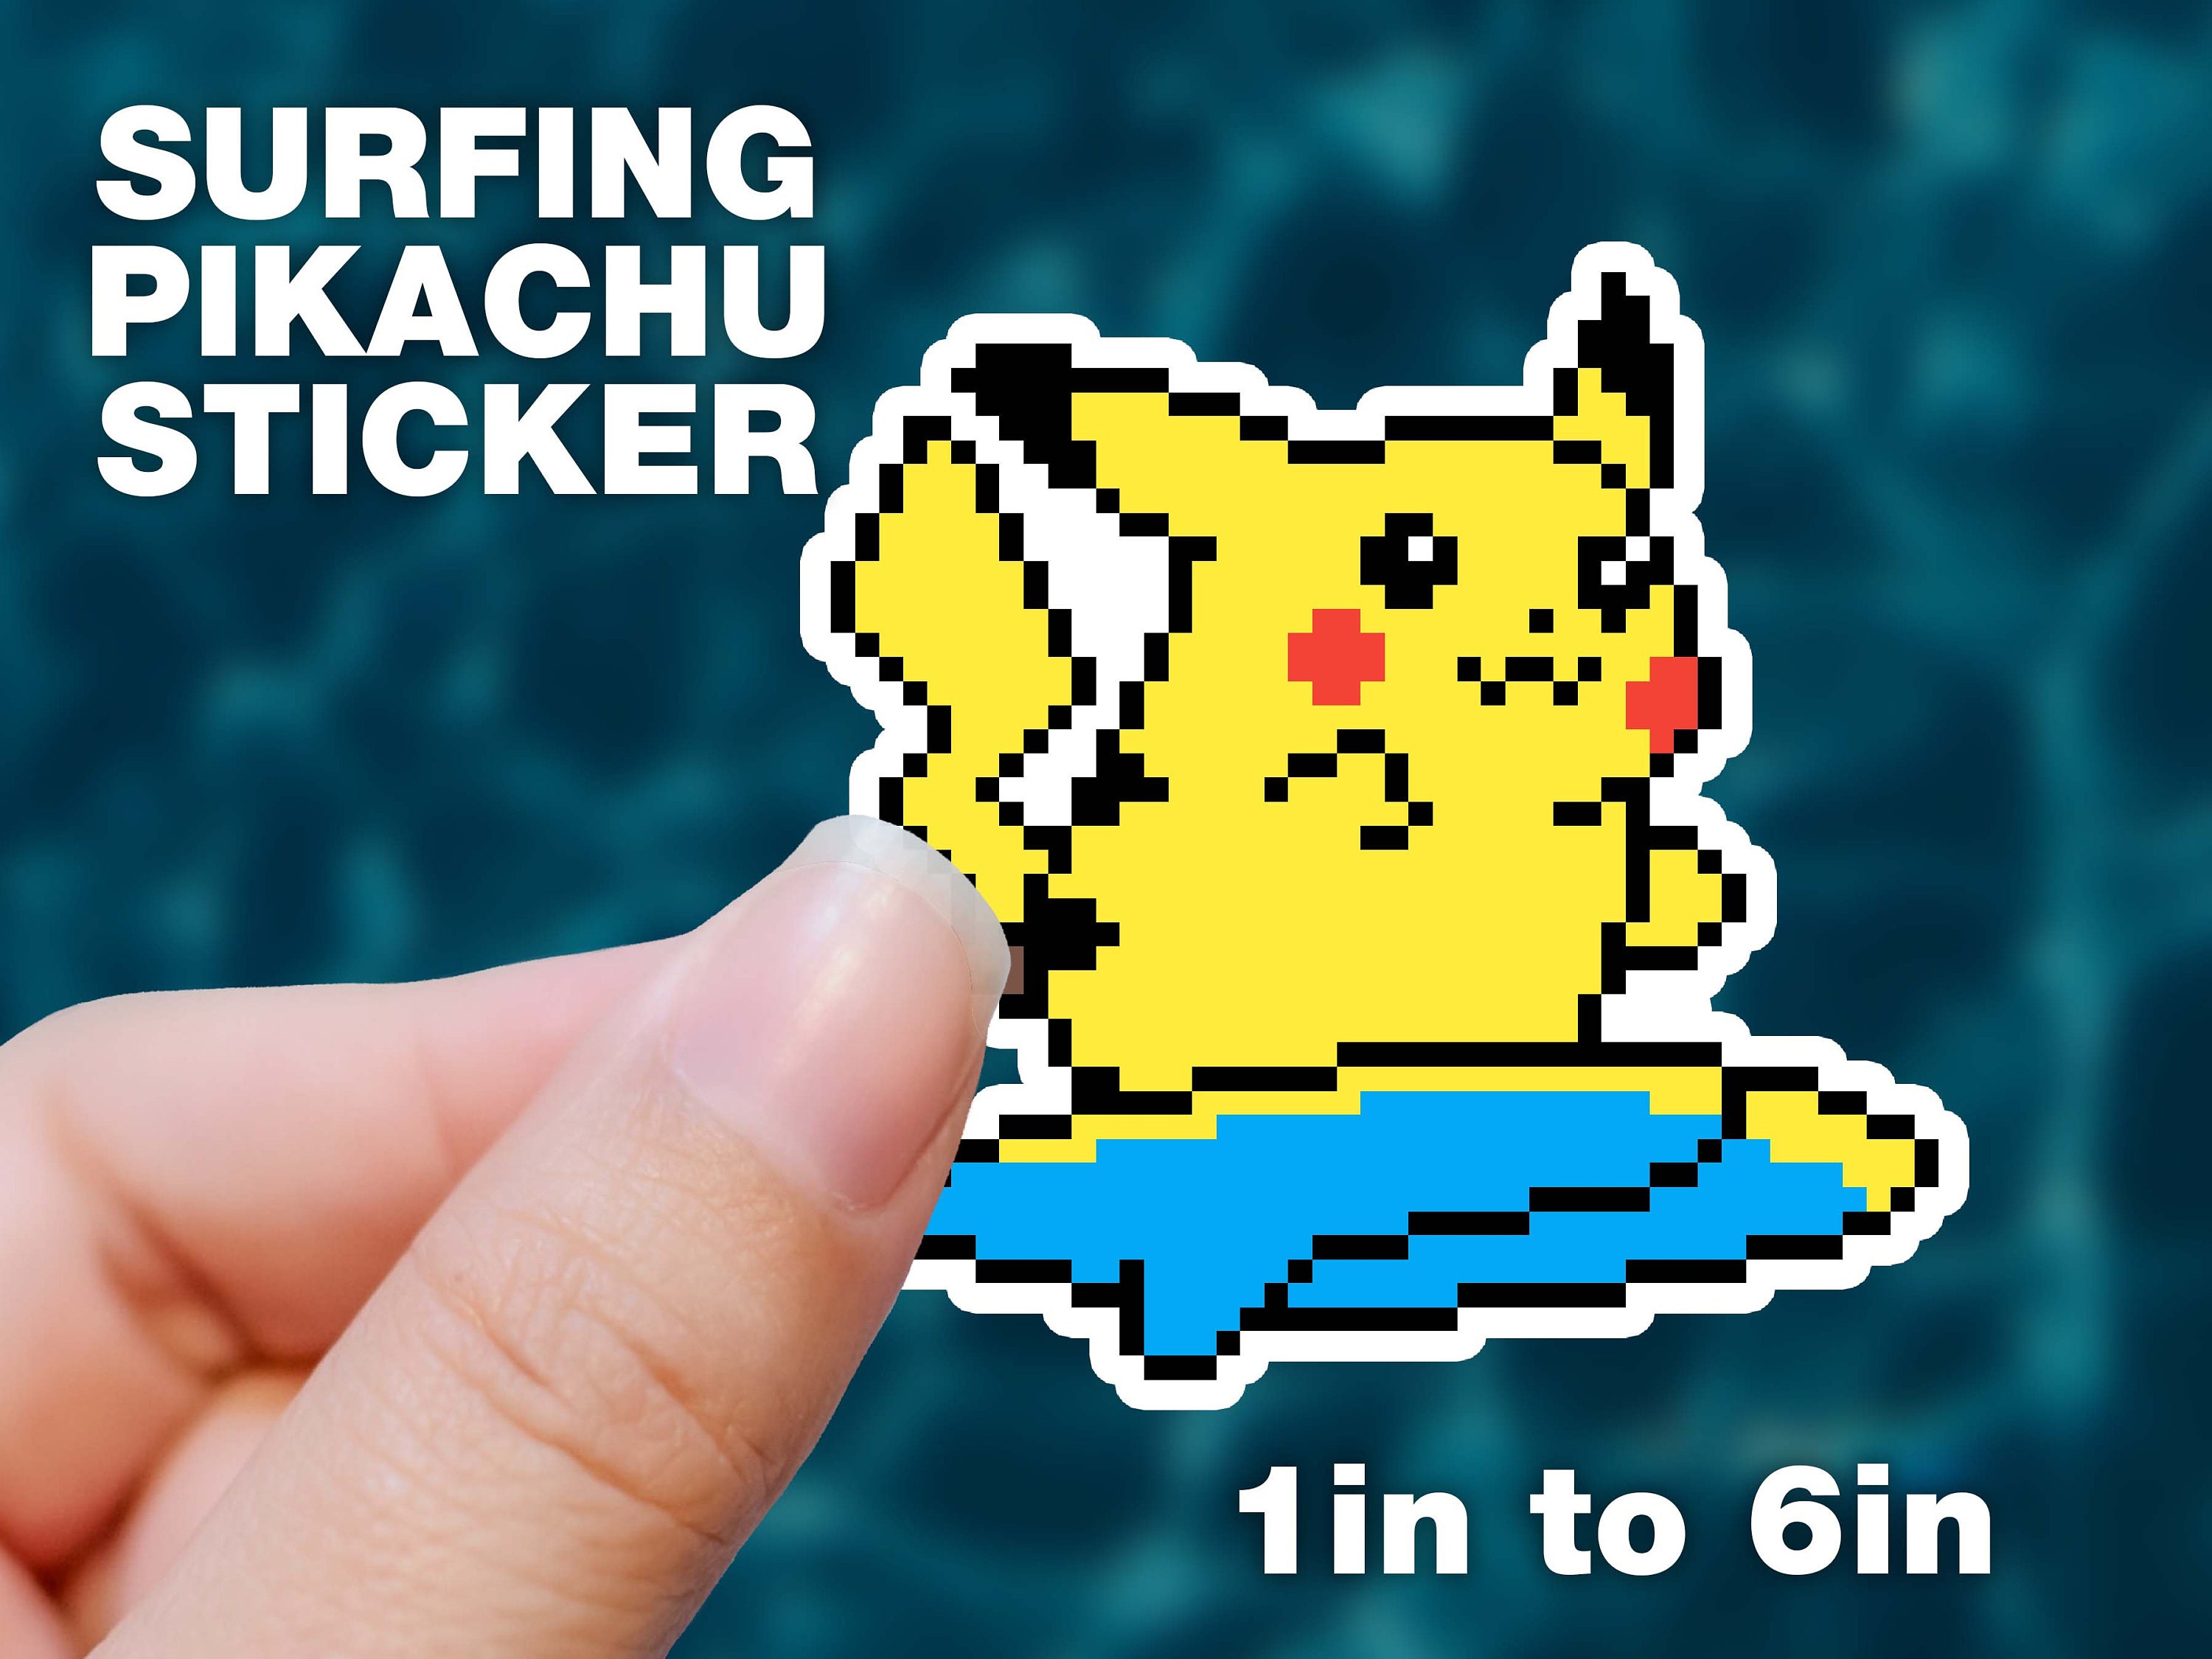 Surfing Pikachu Sticker